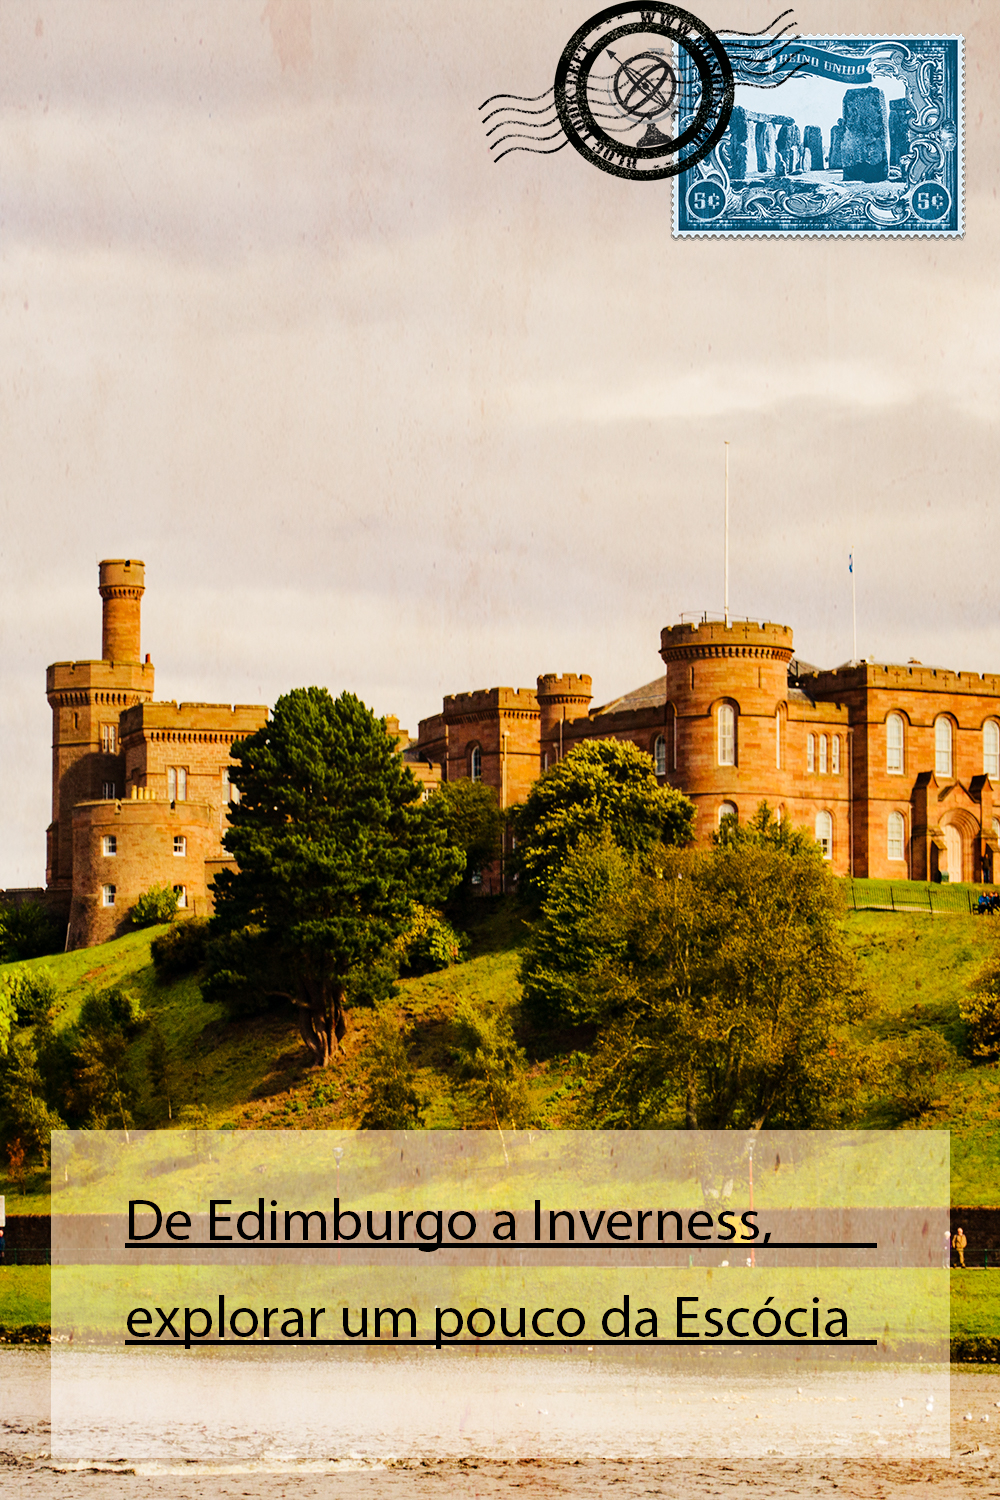 De Edimburgo a Inverness, explorar um pouco da Escócia